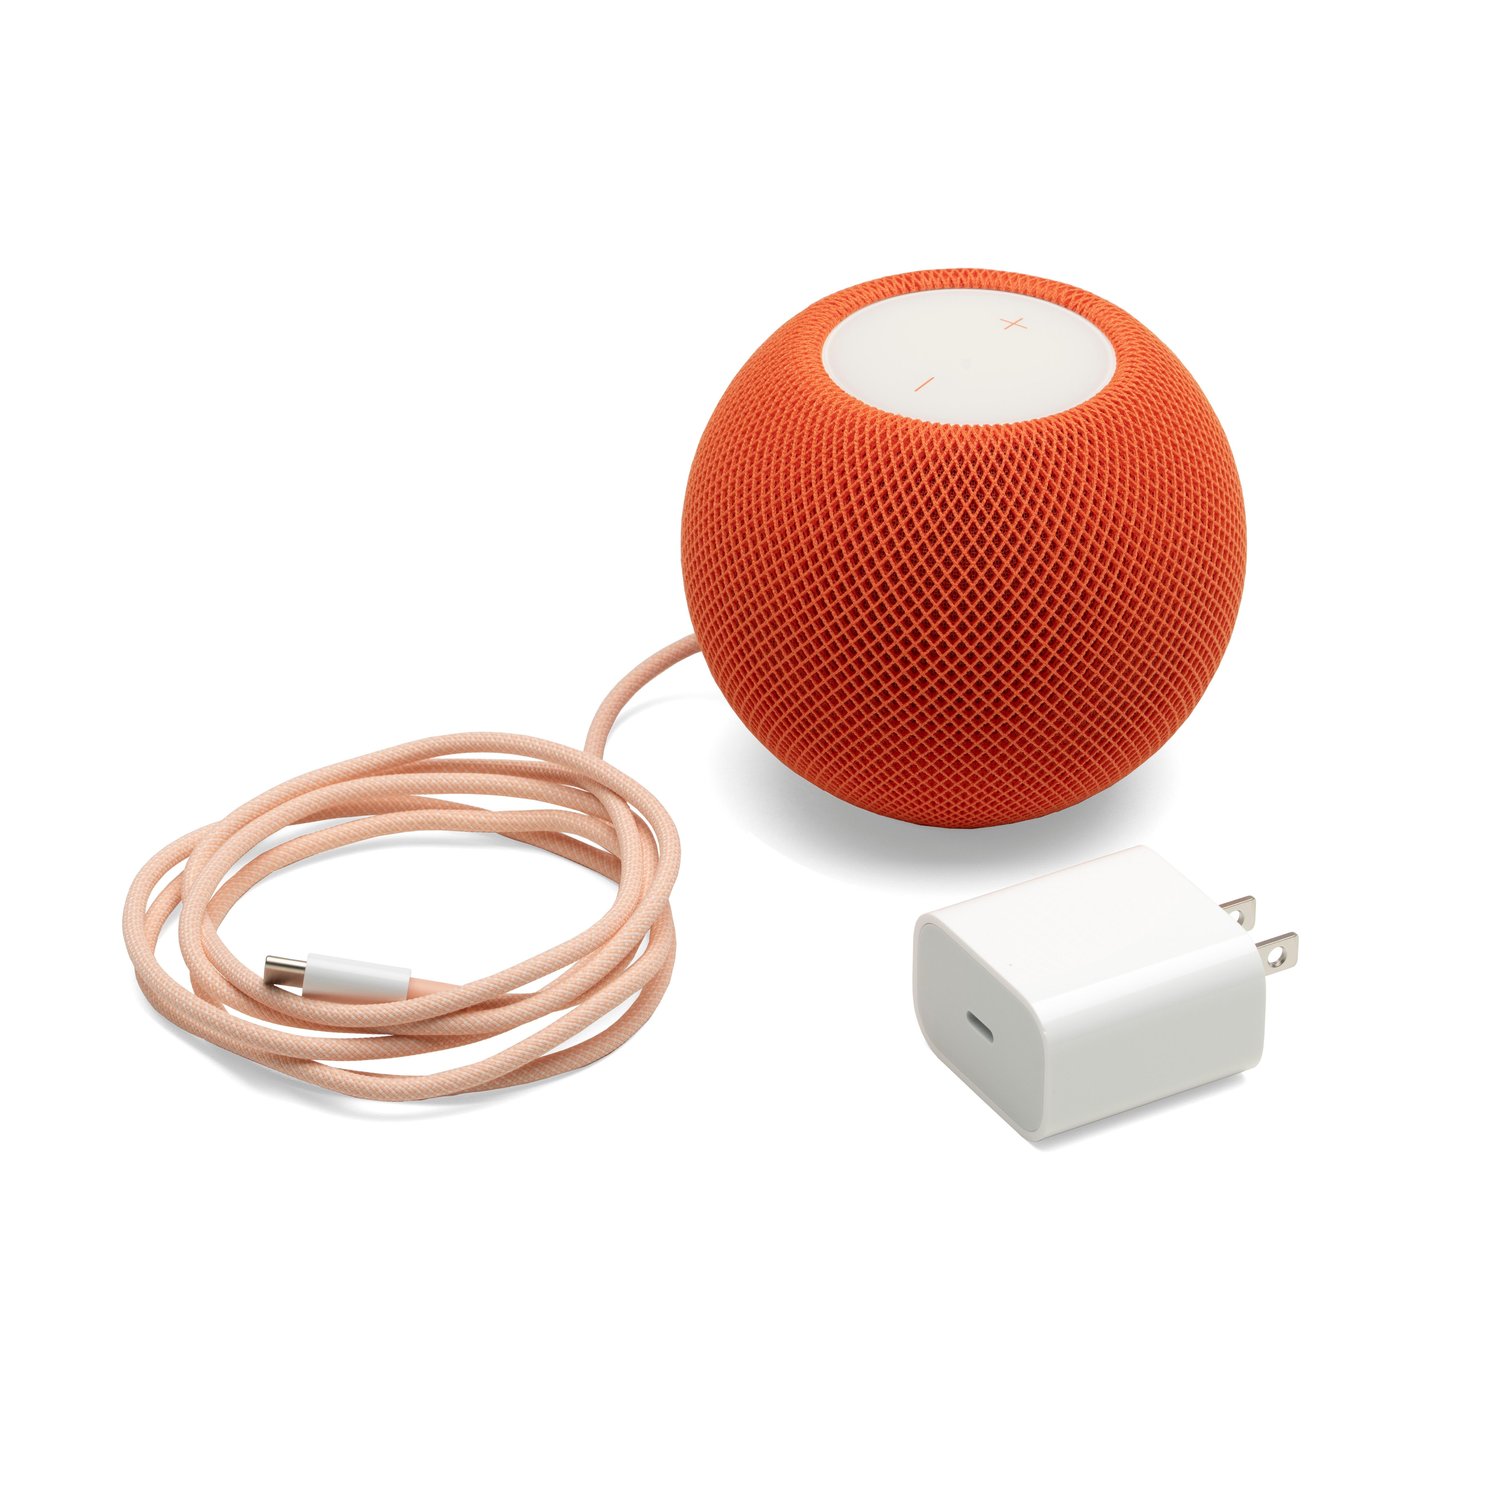 Apple 4J2D3LL/A HomePod mini - Orange at MacSales.com